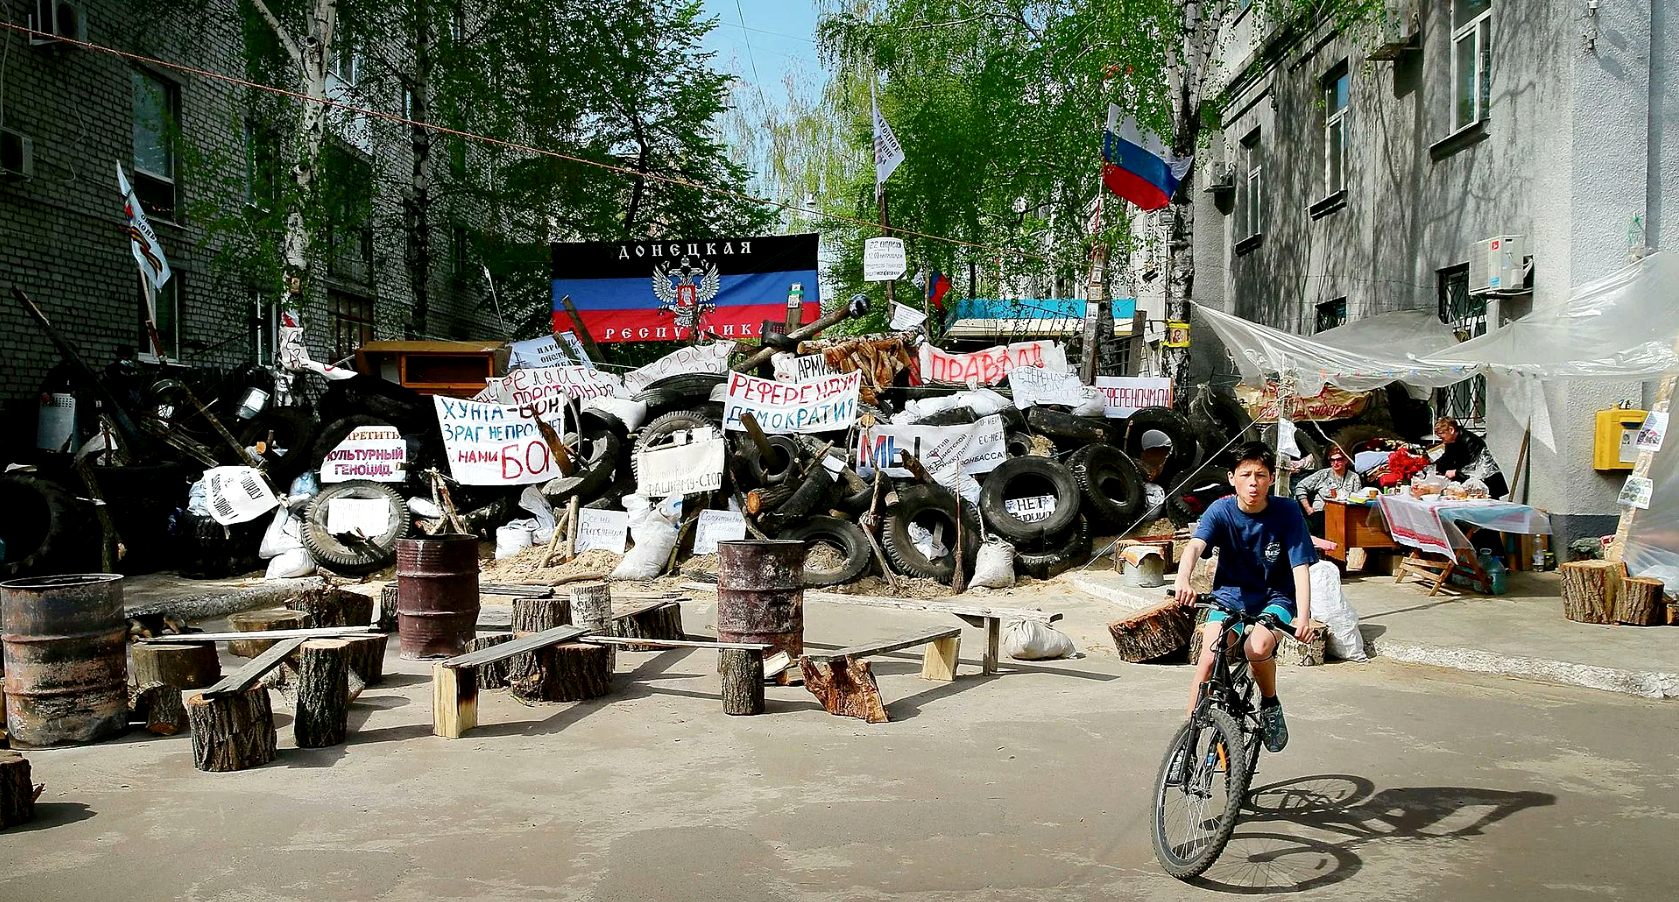 Результат опроса: 99 % признали события в Киеве вооружённым переворотом и высказались за проведение референдума об автономии Донбасса. На фото: баррикада на улице Славянска. Весна 2014 года